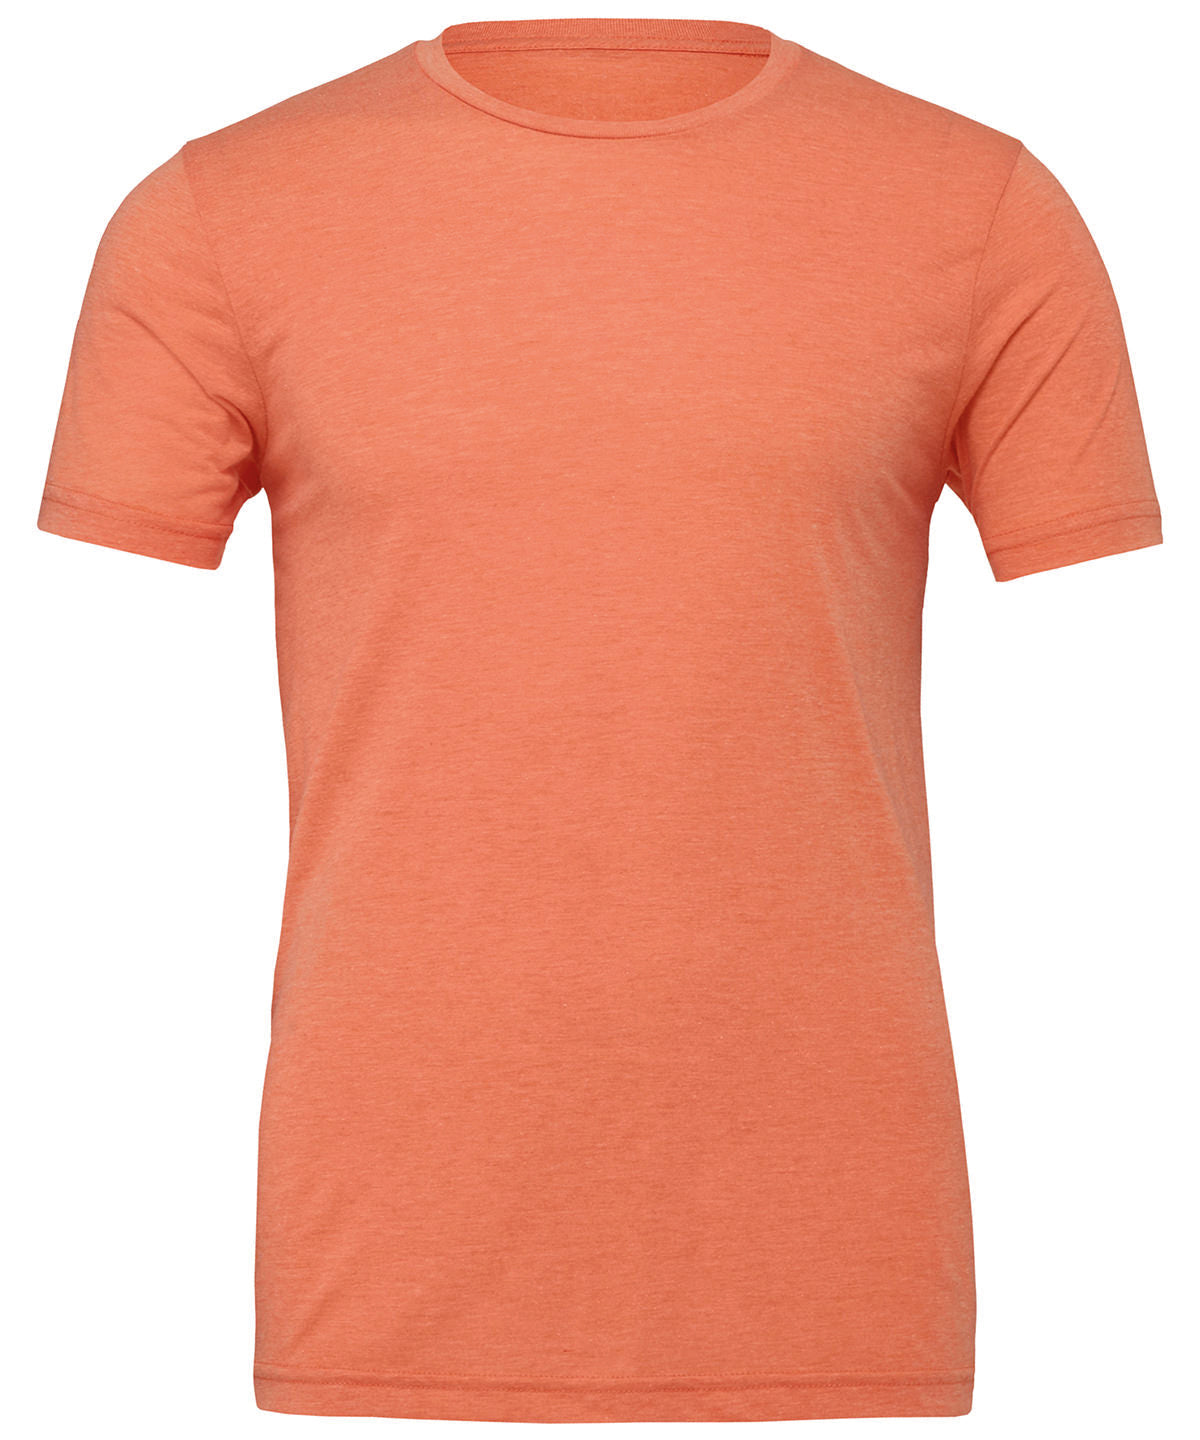 Bella Canvas Unisex Jersey Crew Neck T-Shirt - Orange